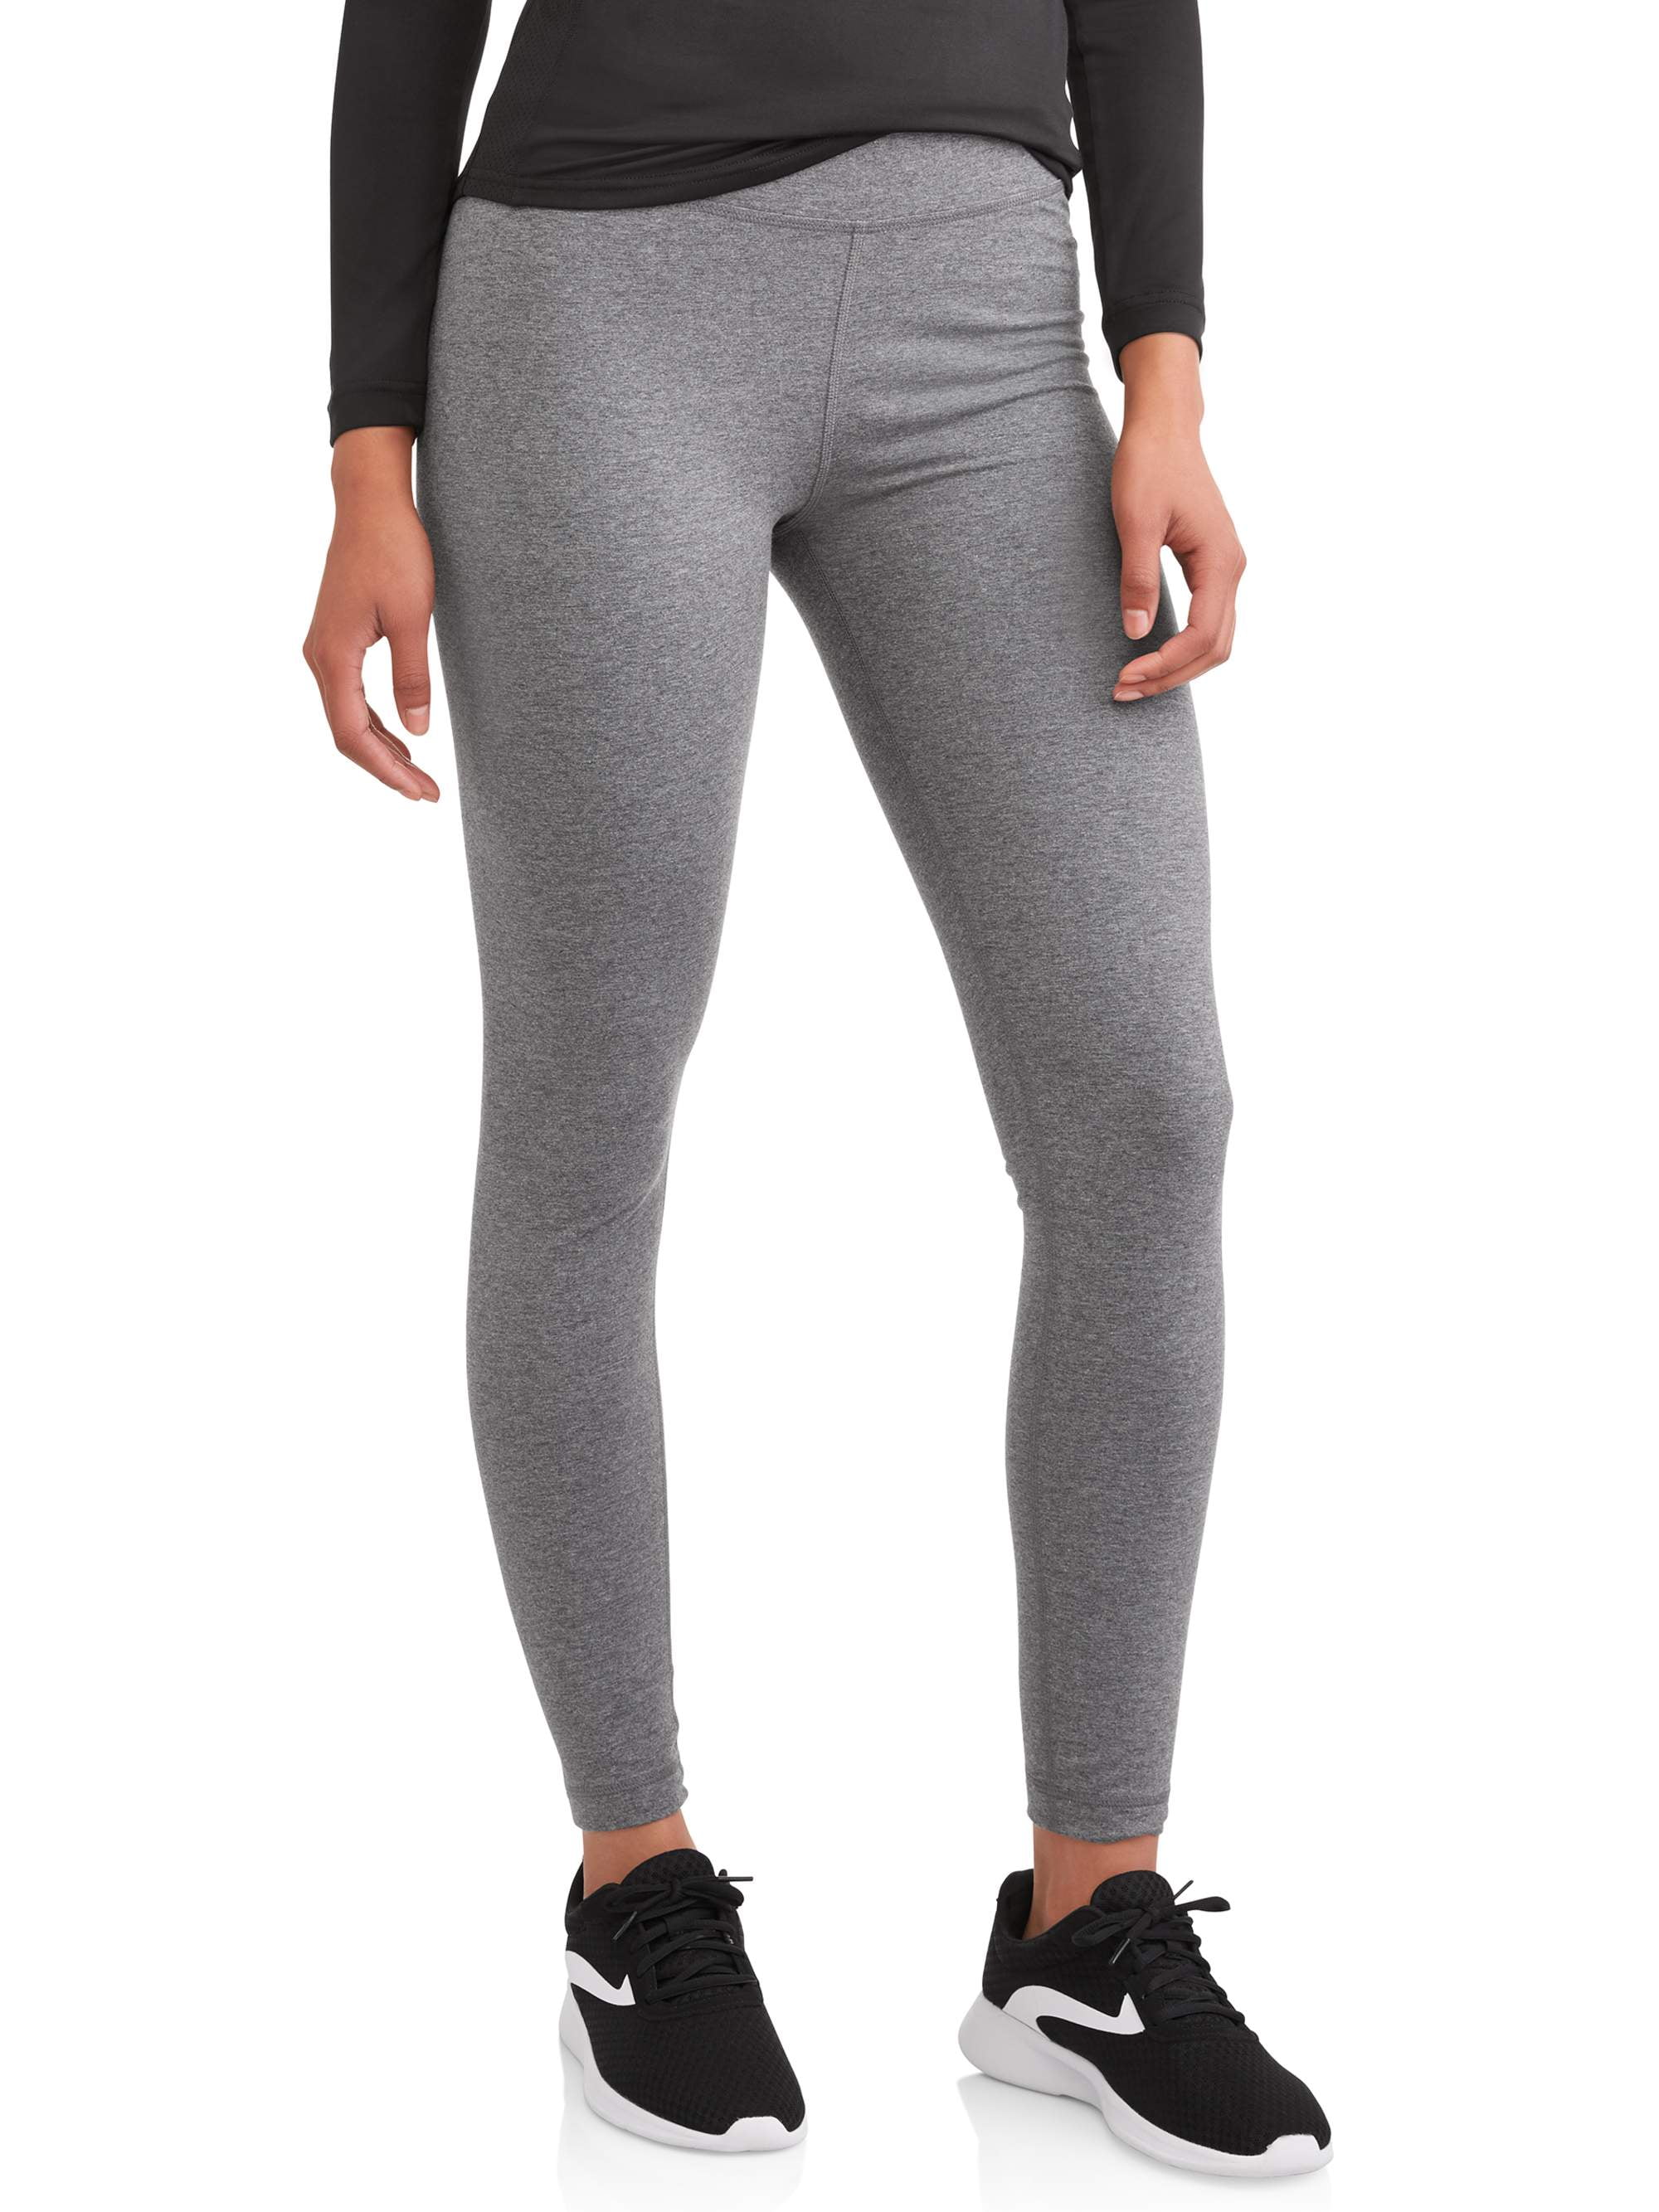 Yoga Pants Dri-More Tech Size XS Athletic Works  Leggings are not pants, Athletic  works, Yoga pants